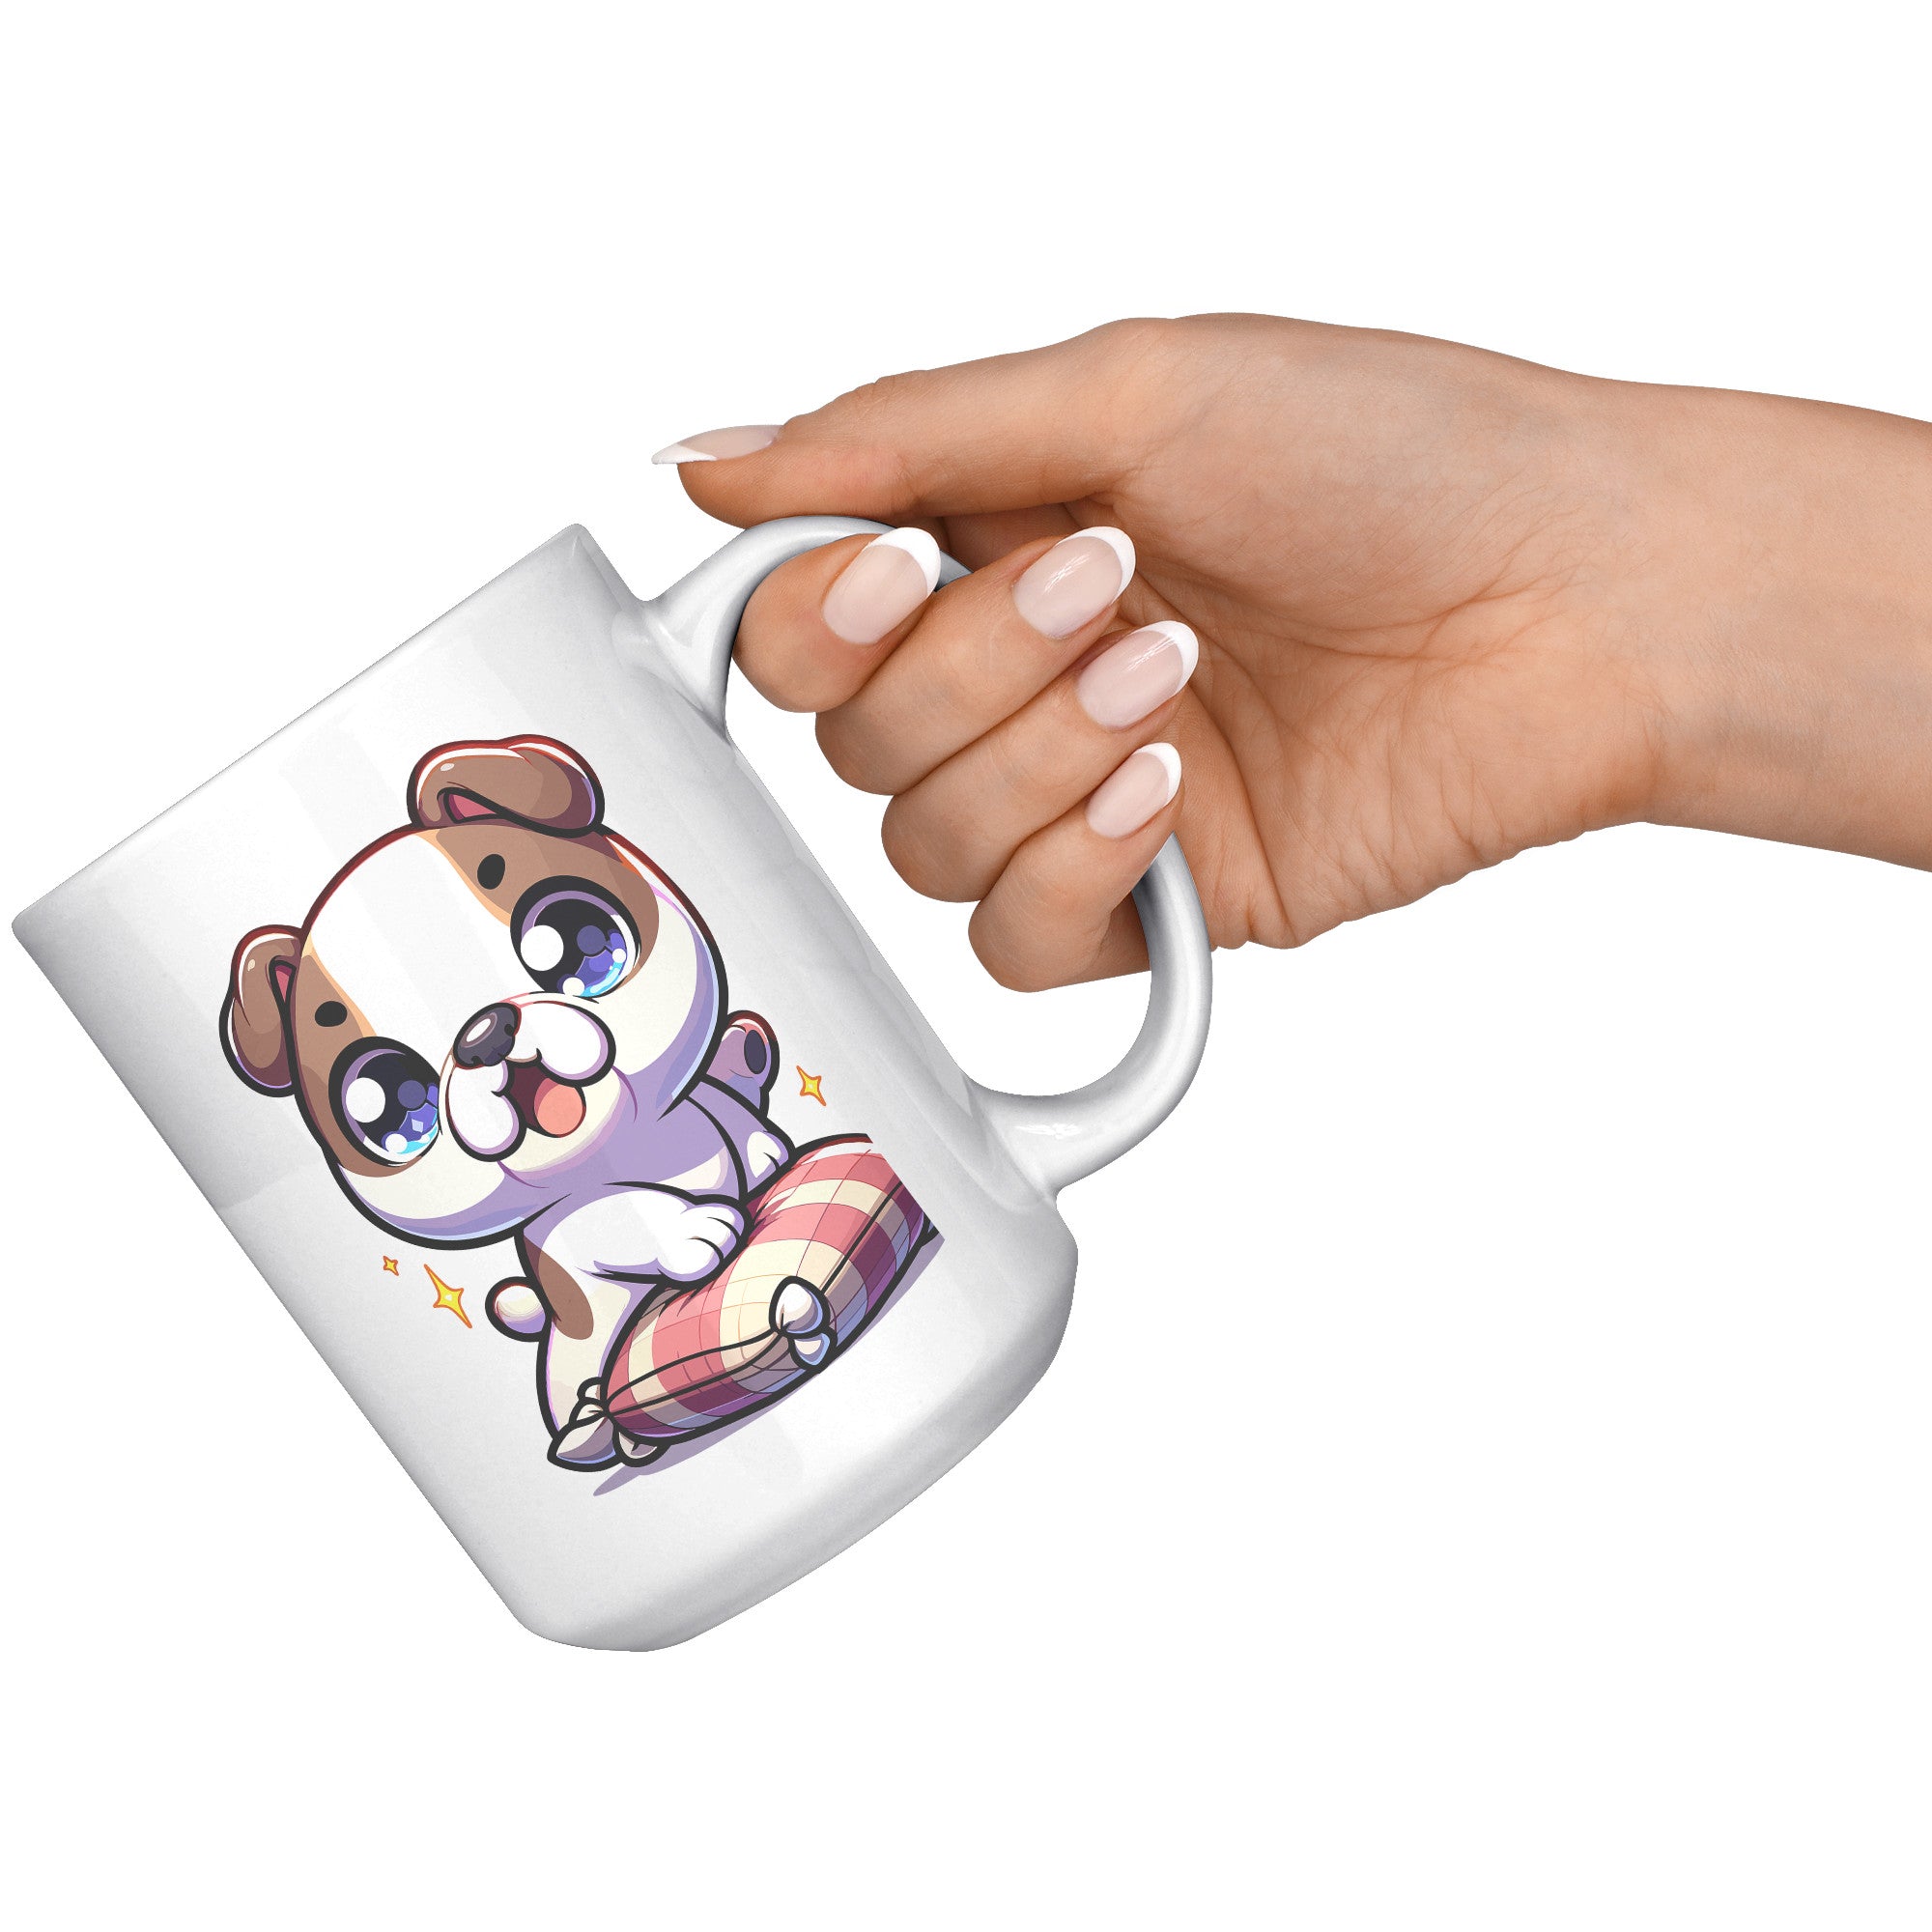 15oz French Bulldog Cartoon Coffee Mug - Frenchie Lover Coffee Mug - Perfect Gift for French Bulldog Owners - Adorable Bat-Eared Dog Coffee Mug - N1